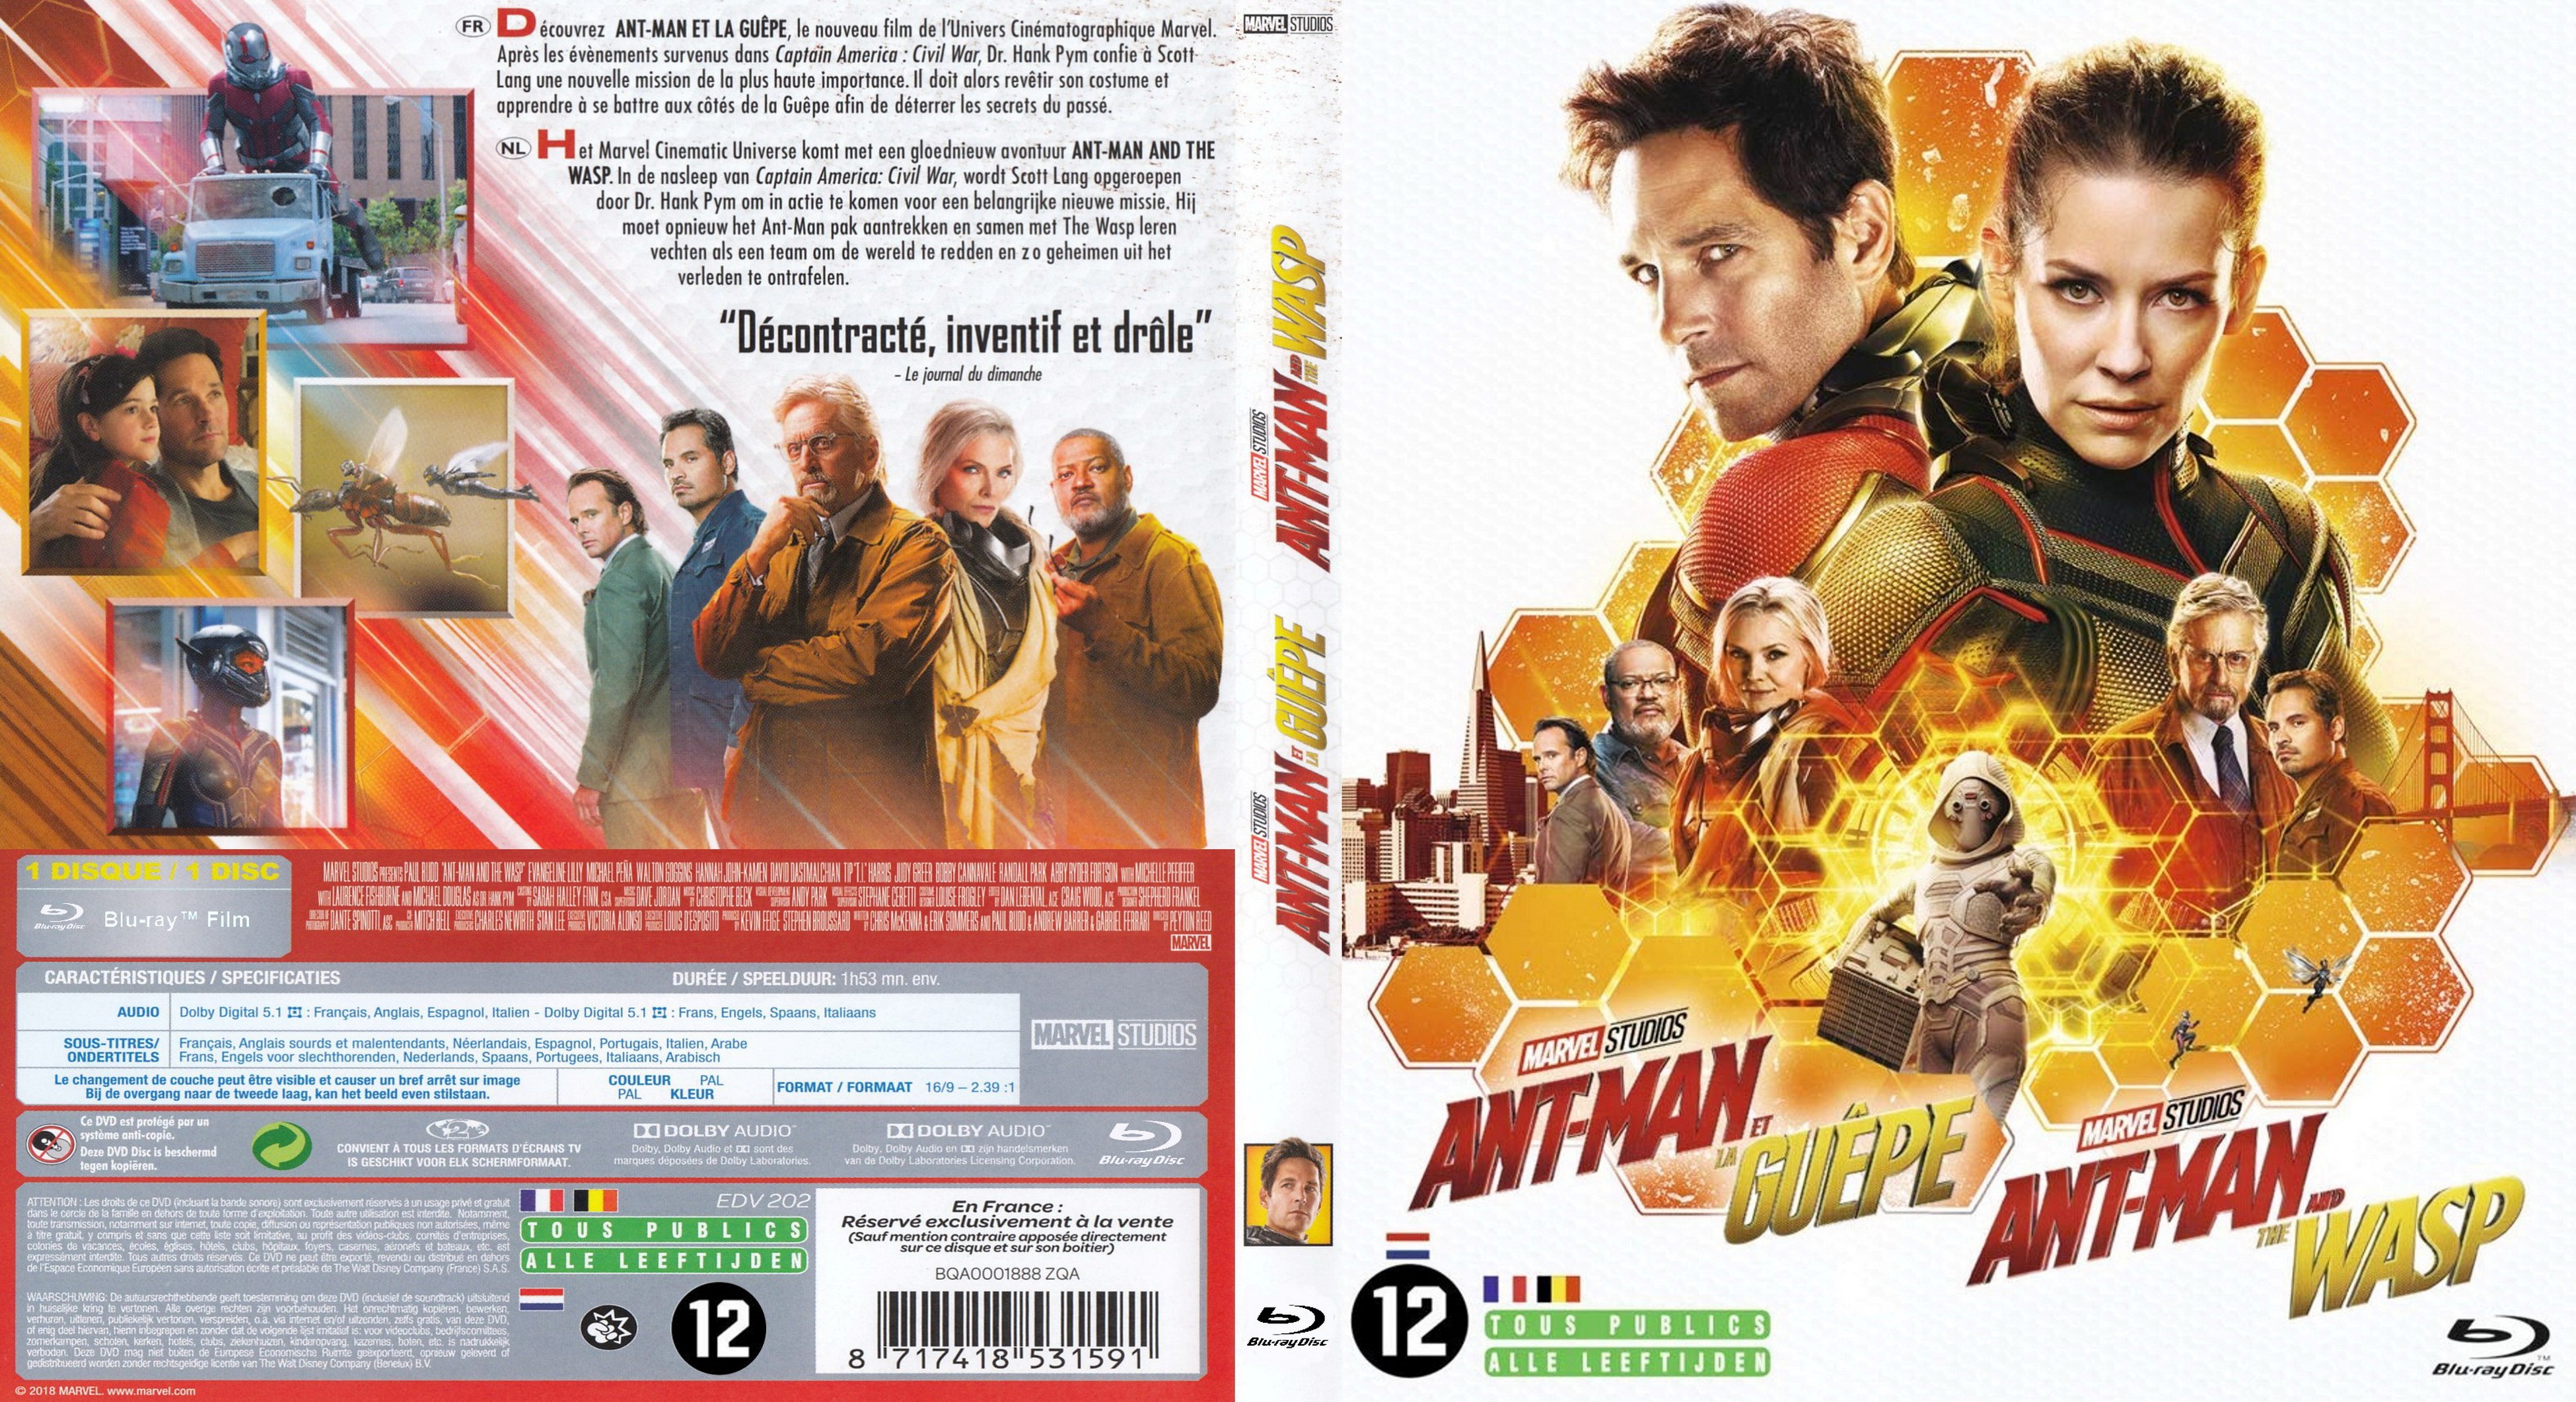 Jaquette DVD Ant-man et la guepe (BLU-RAY)